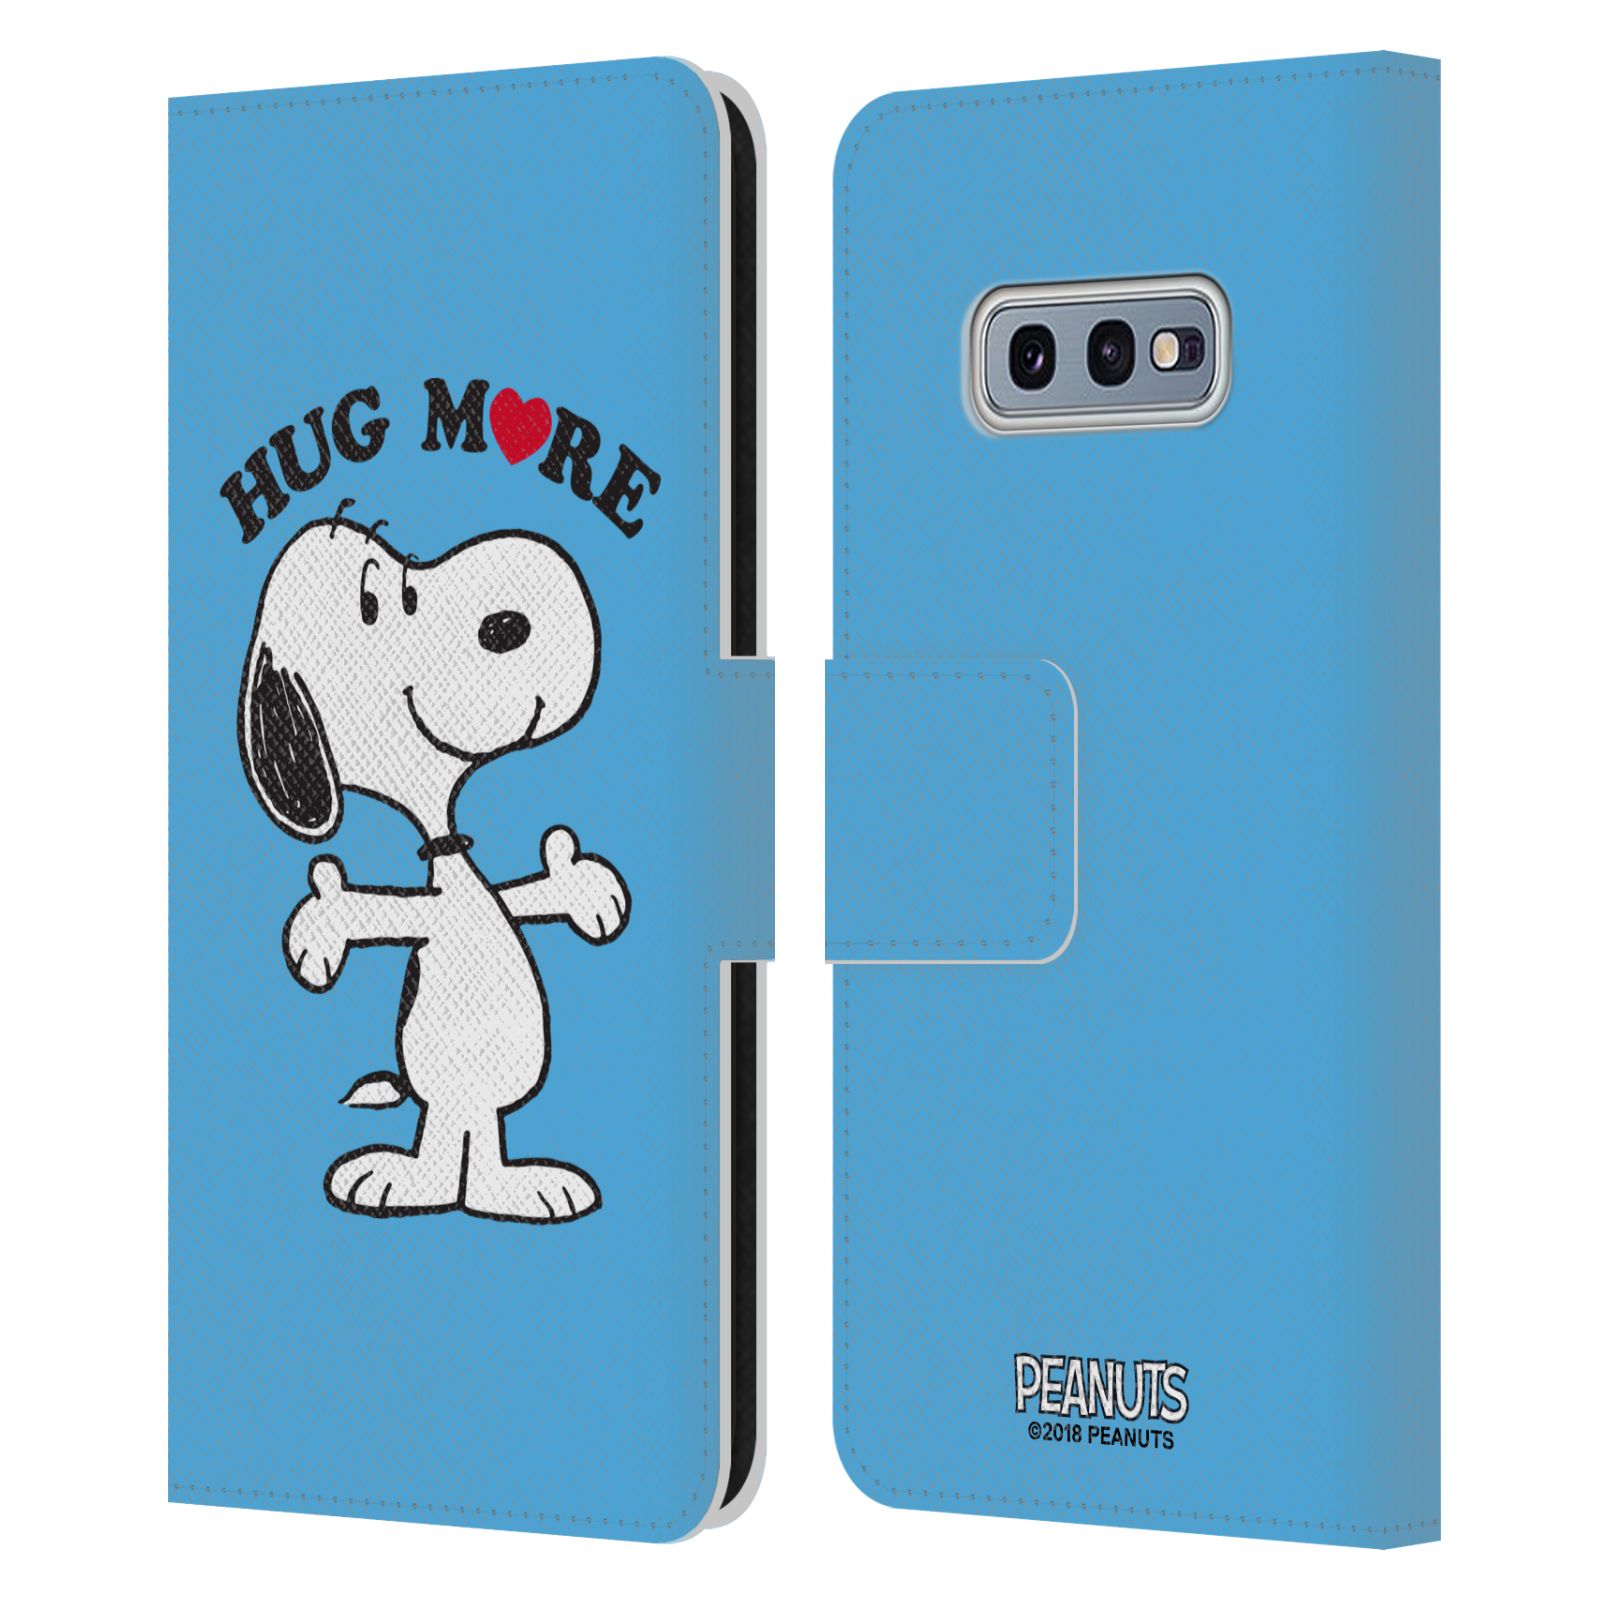 Pouzdro na mobil Samsung Galaxy S10e - Head Case - Peanuts - pejsek snoopy světle modré objetí